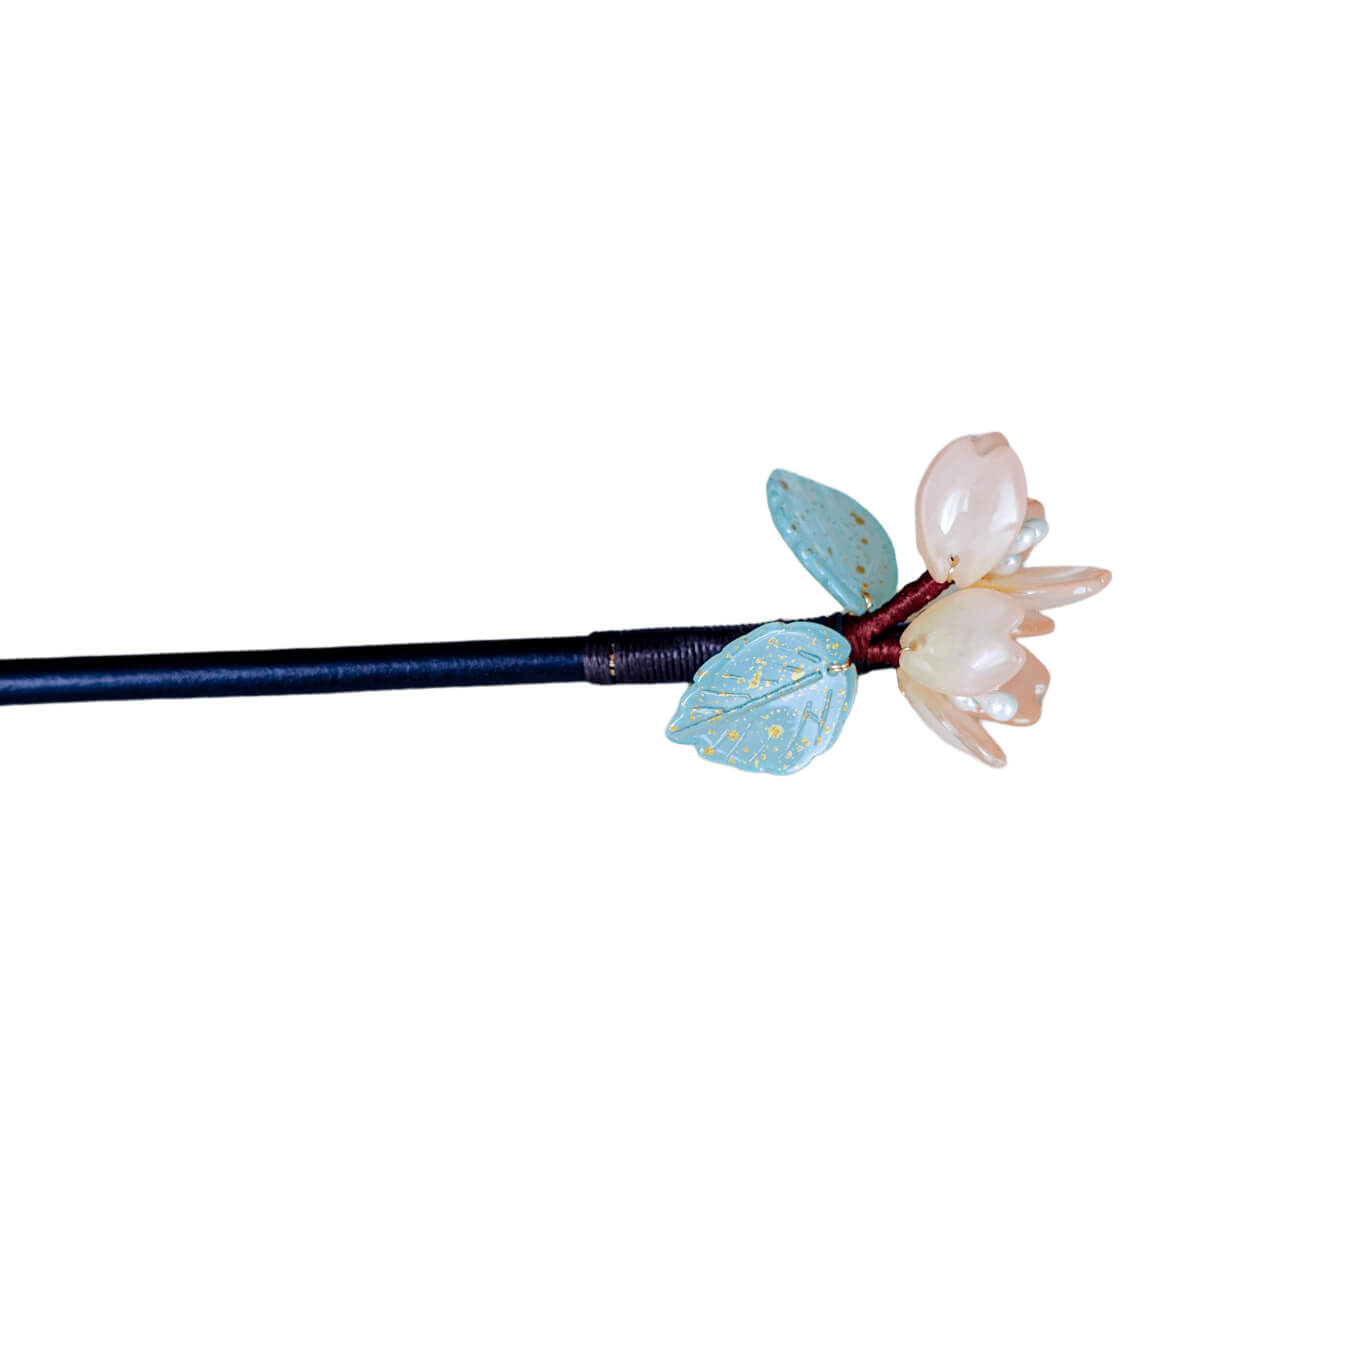 HUANG - Flower Wood Hairpin